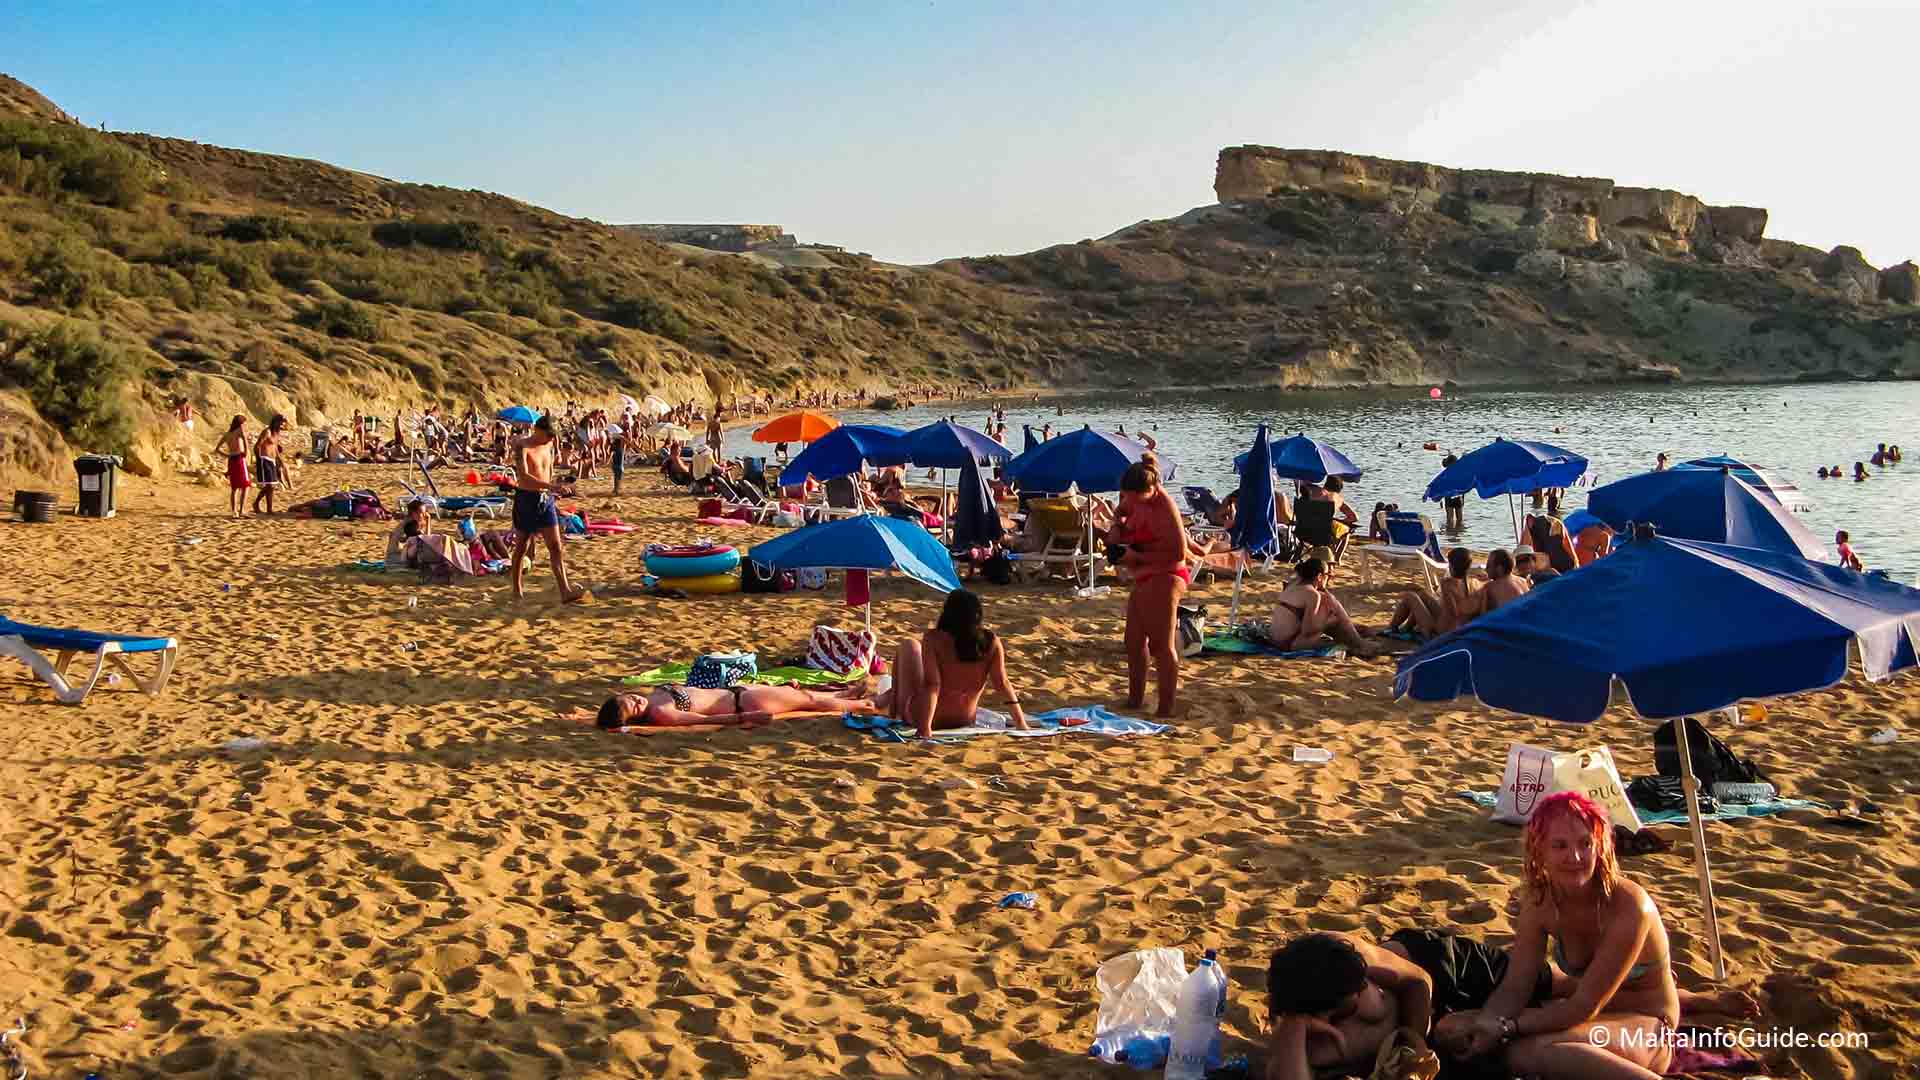 People sunbathing at Ghajn Tuffieha Malta